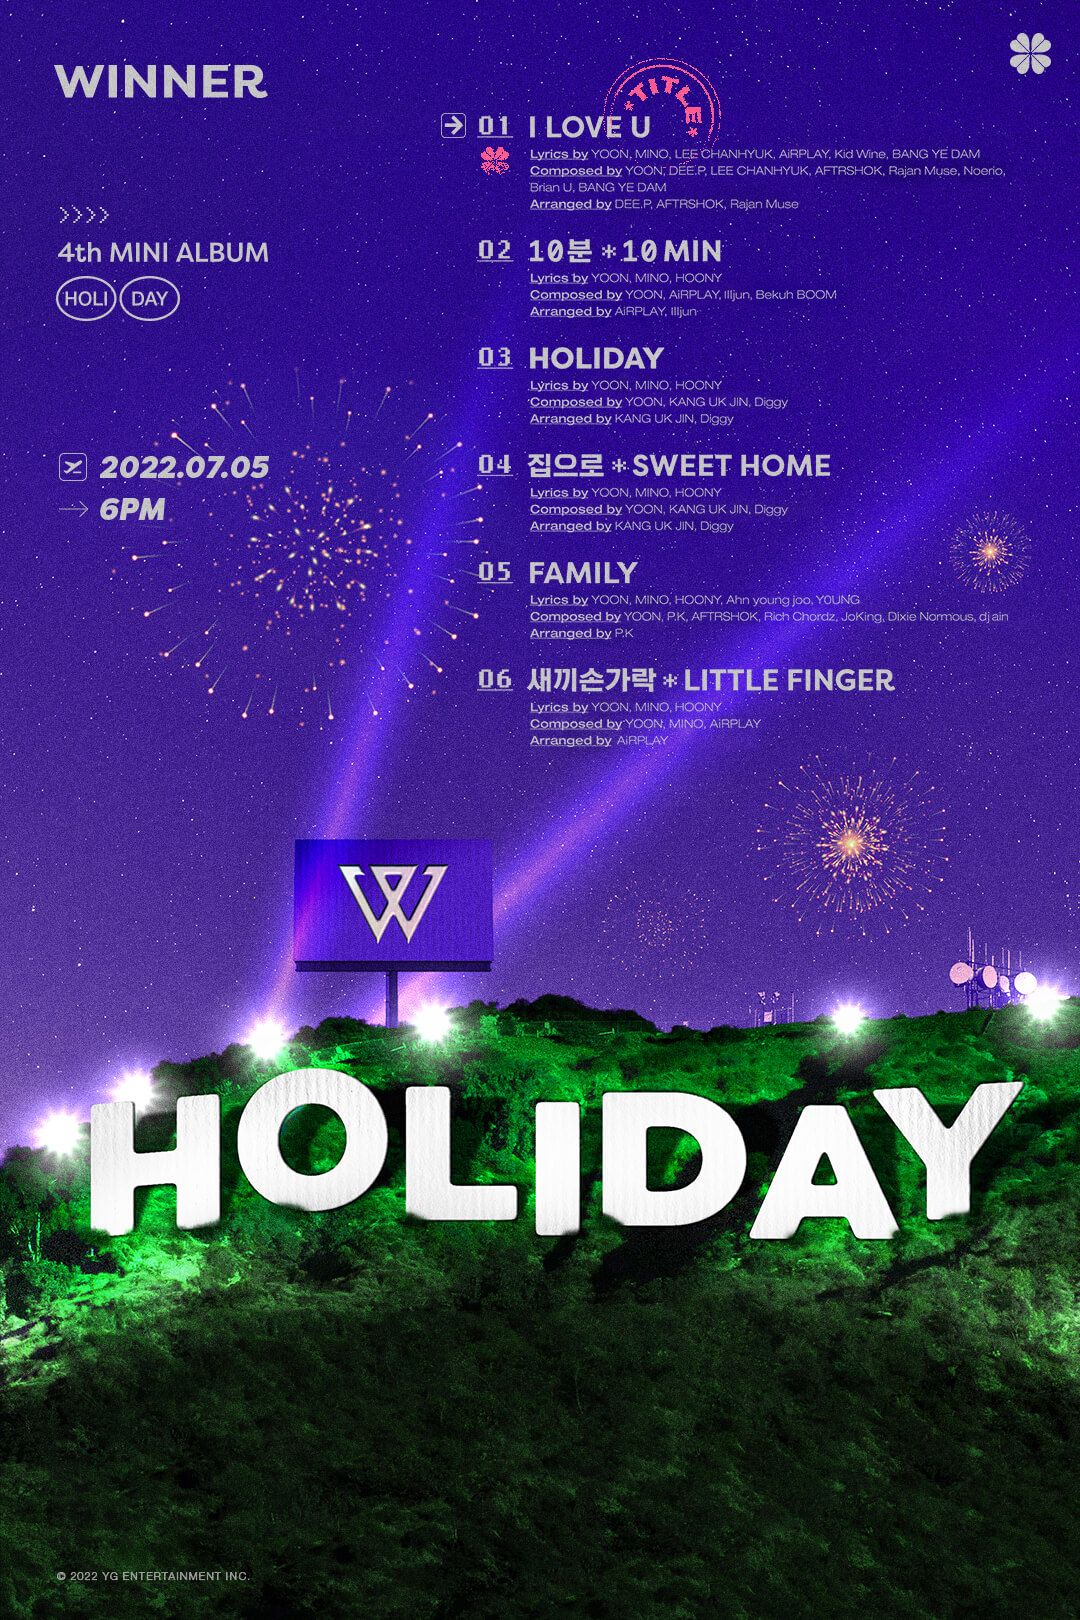 Hiatus dari TREASURE, Bang Yedam Kreditkan Jadi Produser Lagu Utama Album WINNER 'HOLIDAY'